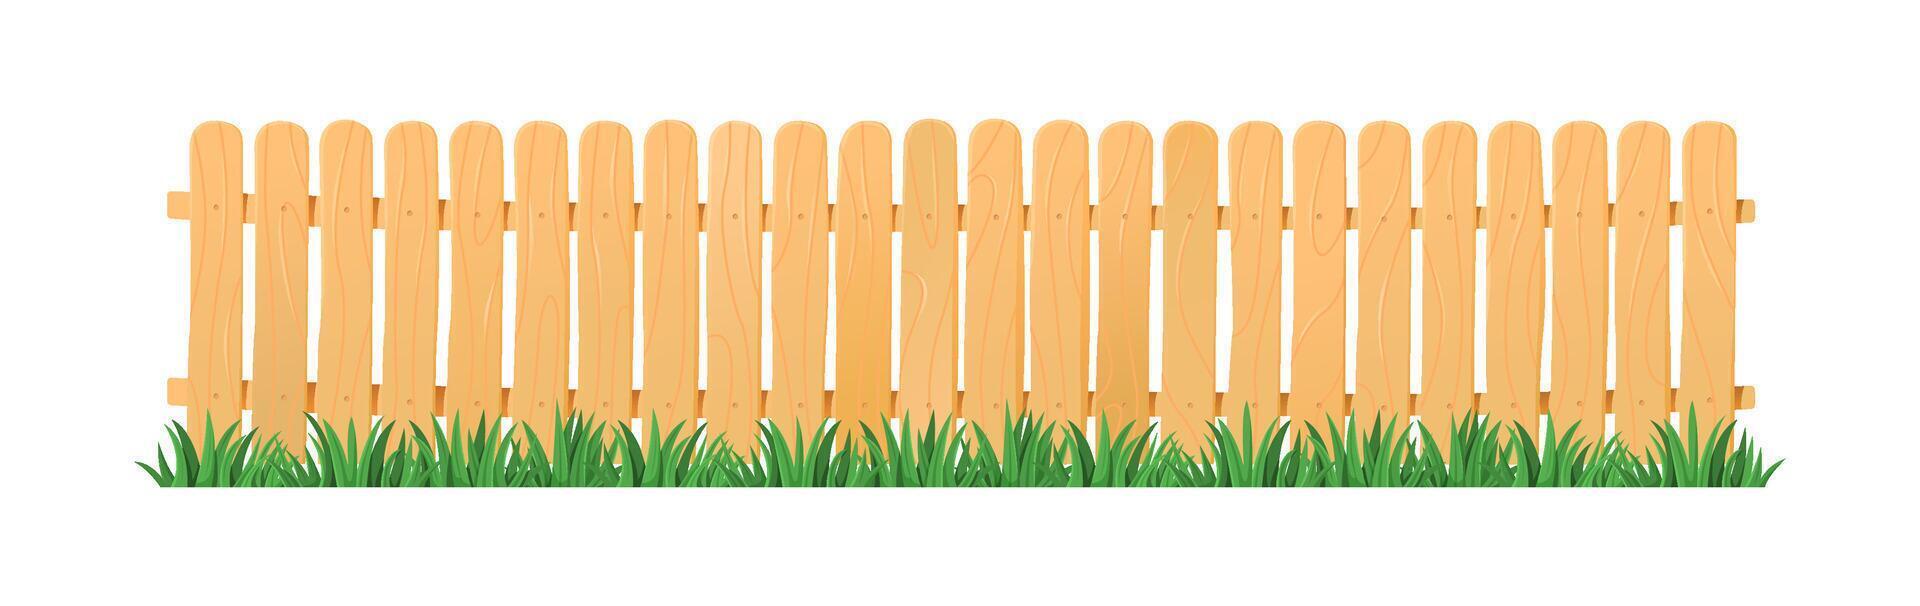 en bois jardin clôture avec luxuriant vert herbe. vecteur illustration de barrière avec Frais pelouse.